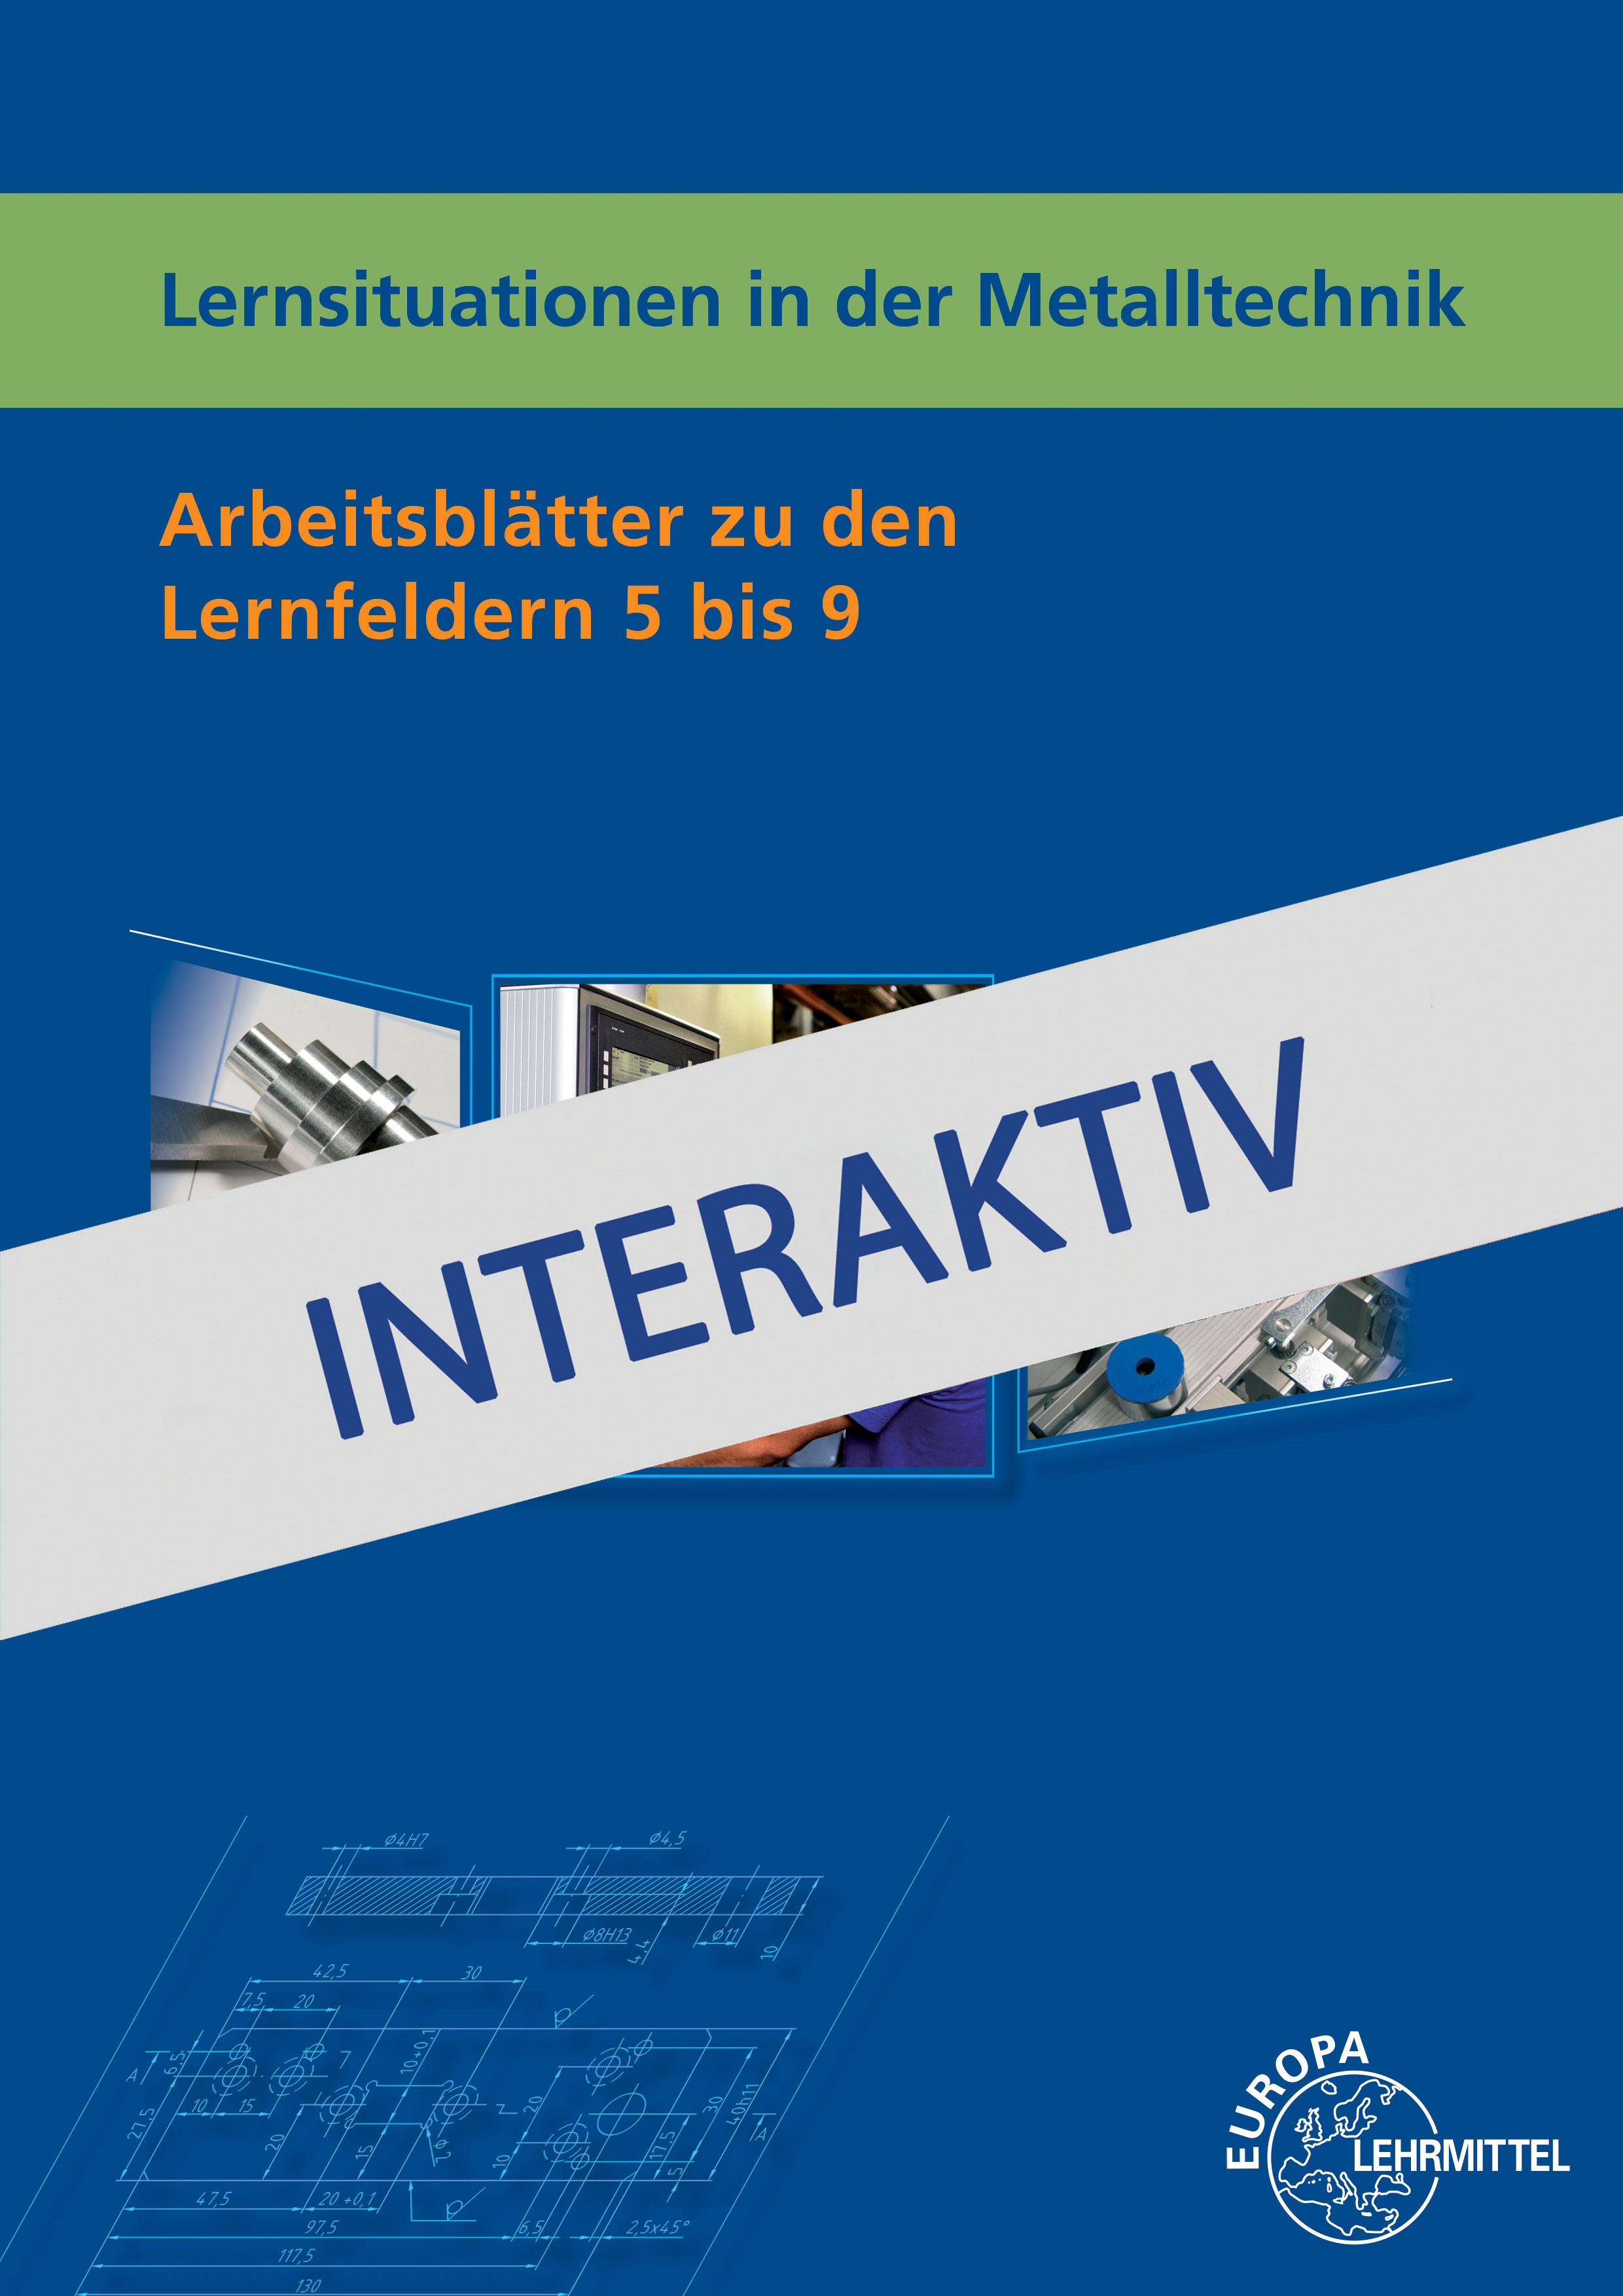 Lernsituationen in der Metalltechnik - Arbeitsblätter LF 5 bis 9 - interaktiv